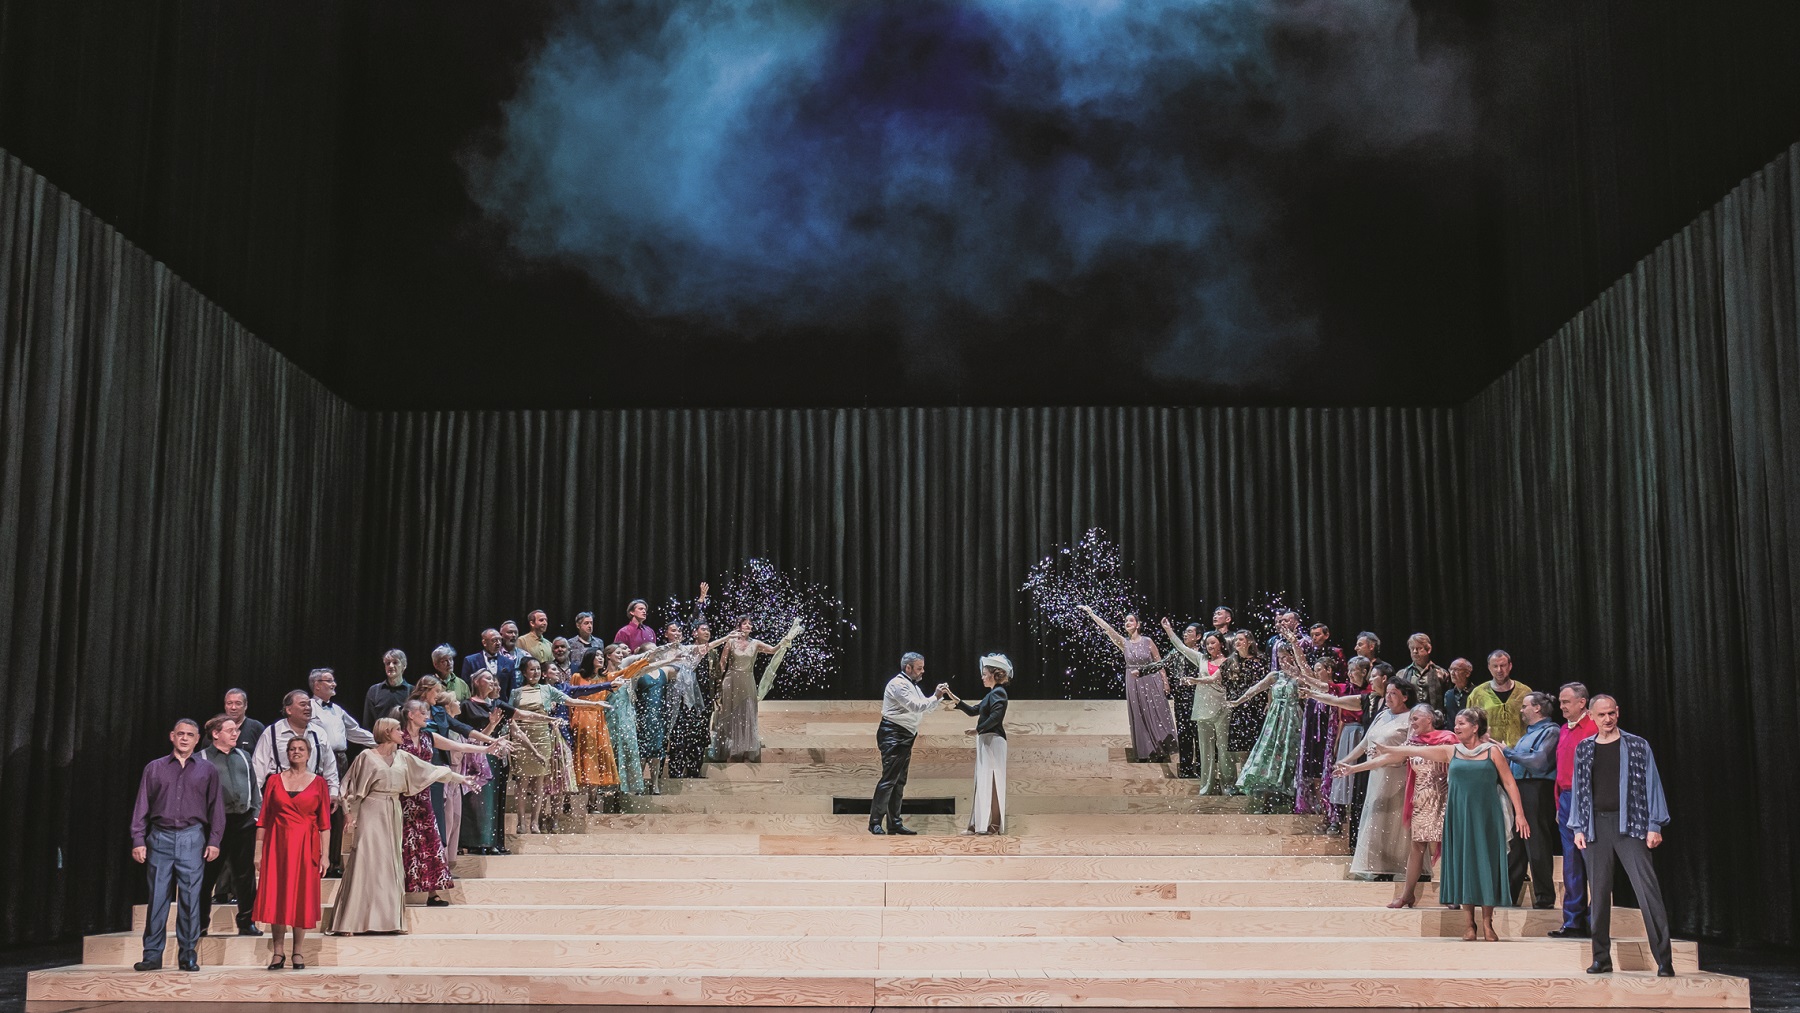   Kapitulation hier, Machtdemonstration da | Die neue Opernintendanz von Tobias Wolff beginnt mit »Undine« unglücklich  